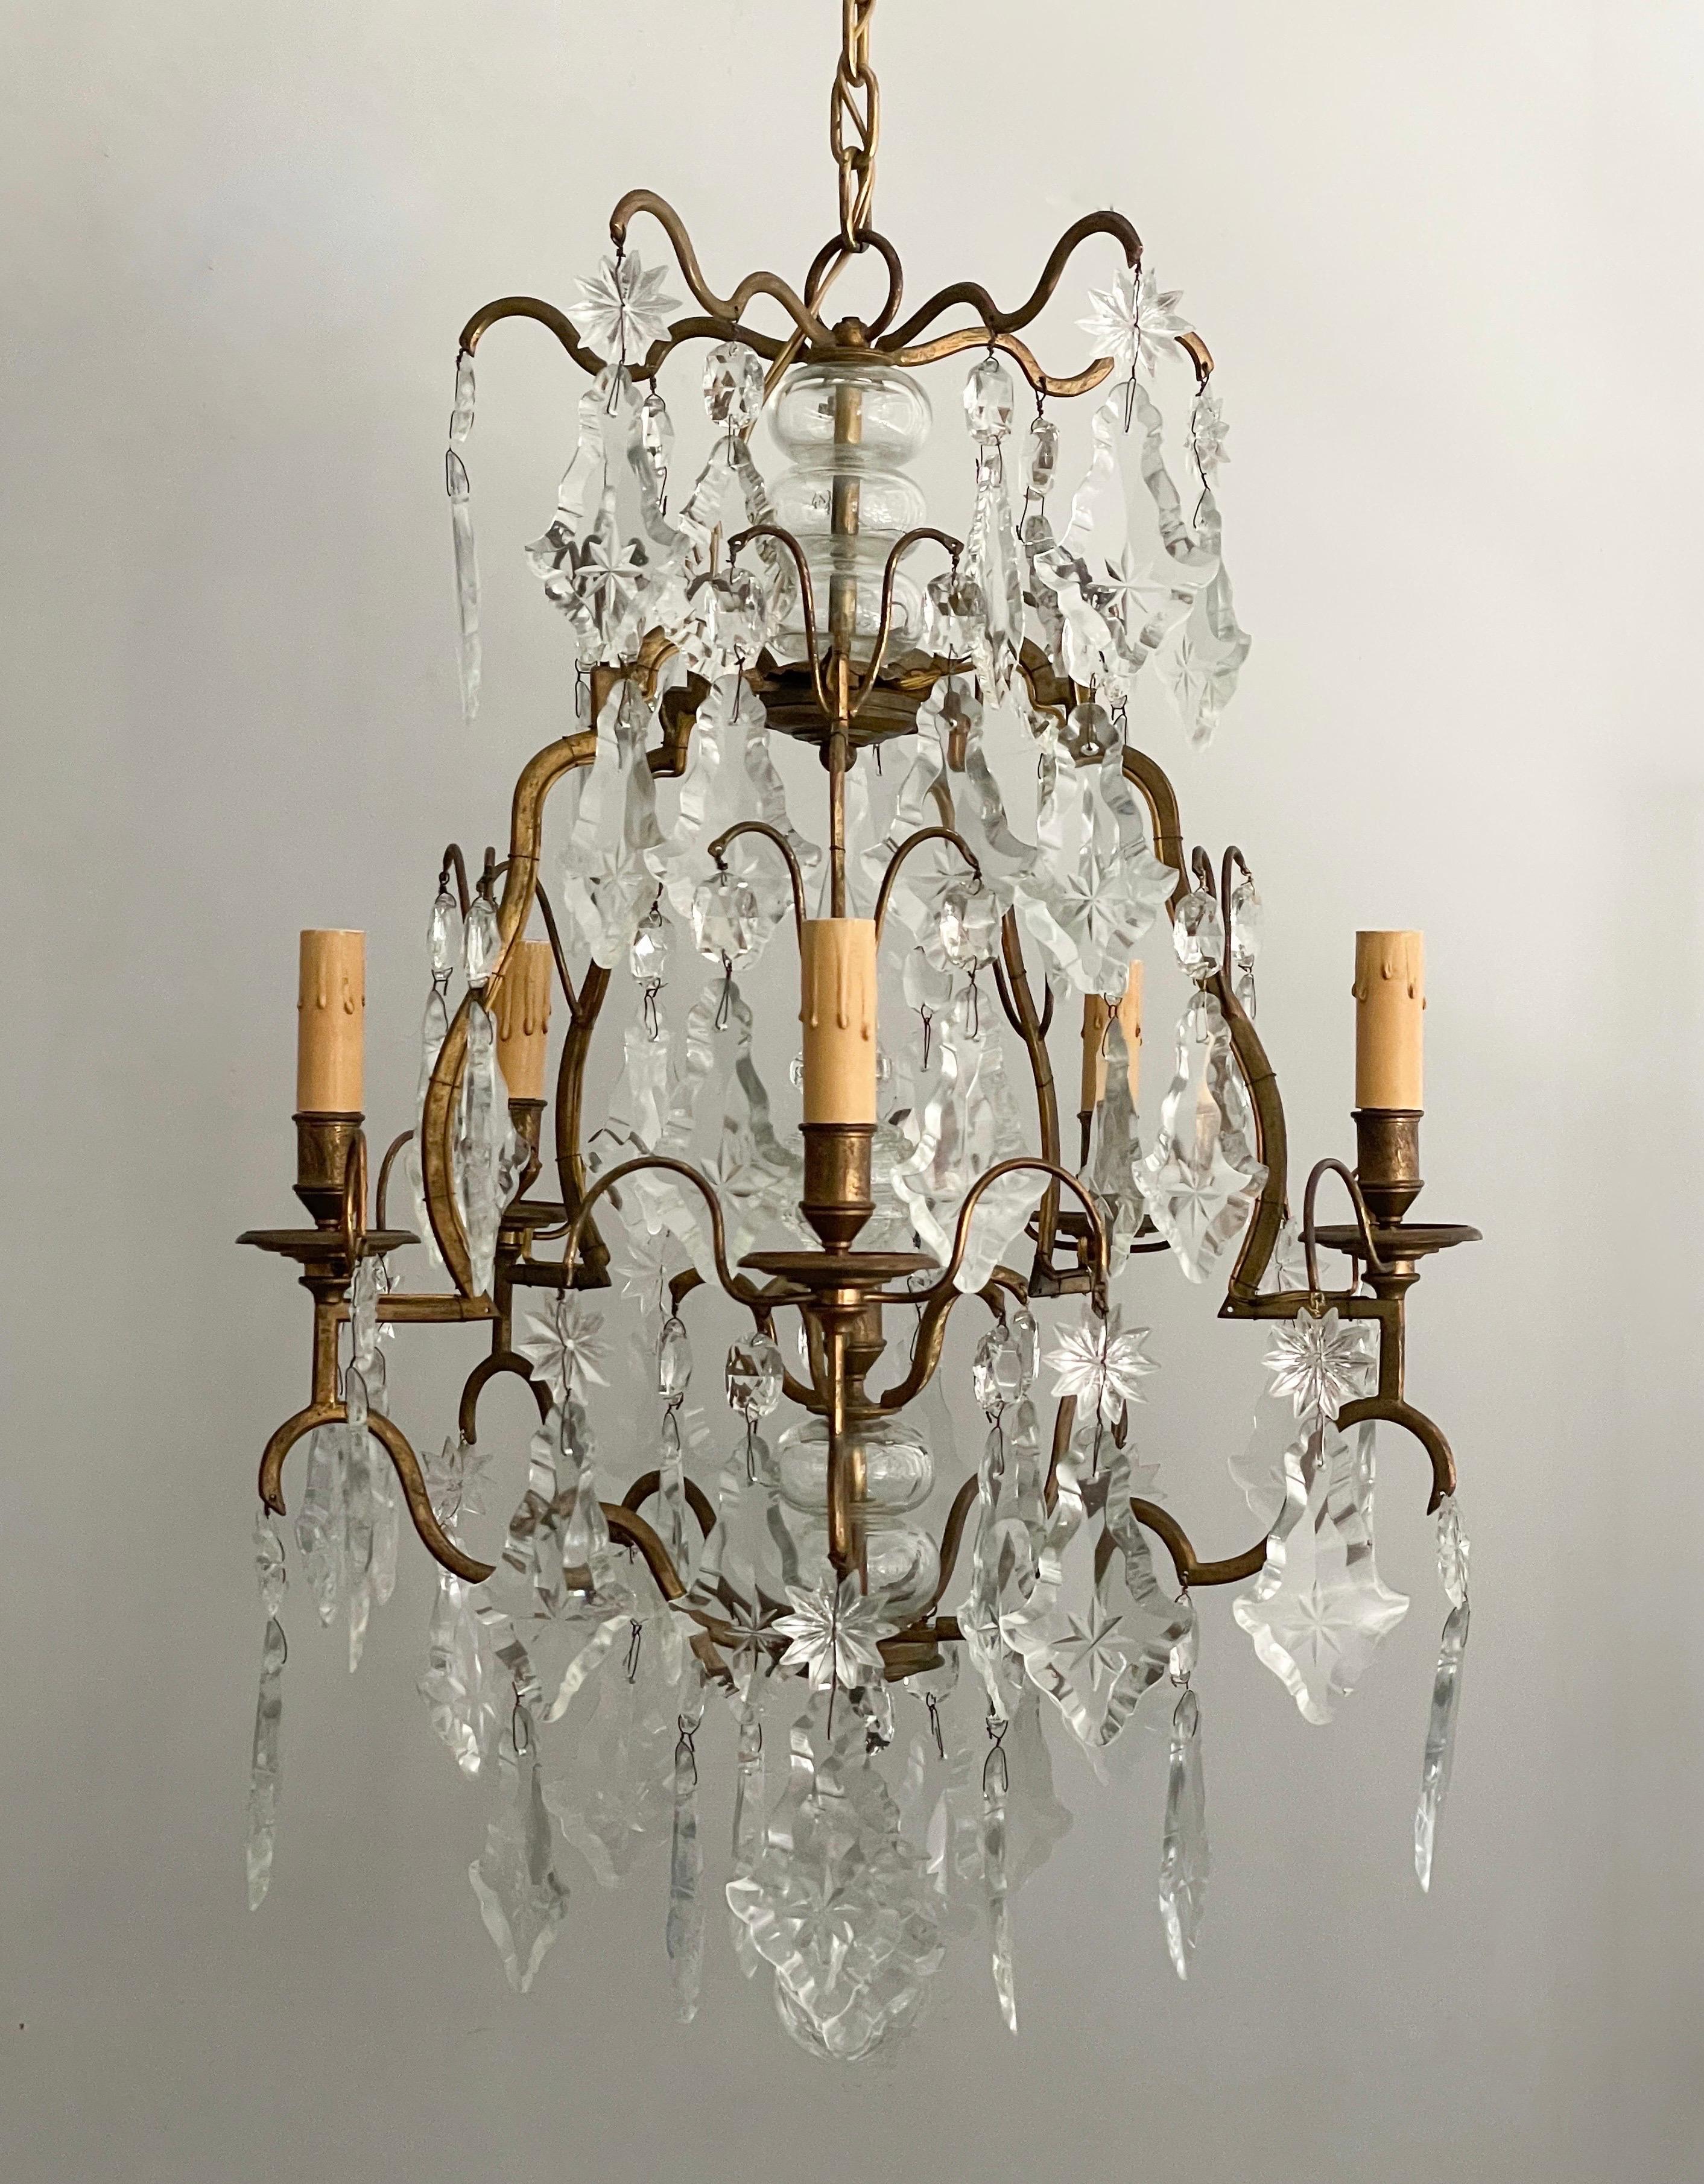 Magnifique lustre en cristal français des années 1940 de style Versailles. 

Ce lustre présente un cadre en laiton doré à volutes fortement orné de prismes et d'étoiles en cristal gravé. 

Le lustre est câblé et en état de marche, il nécessite 5